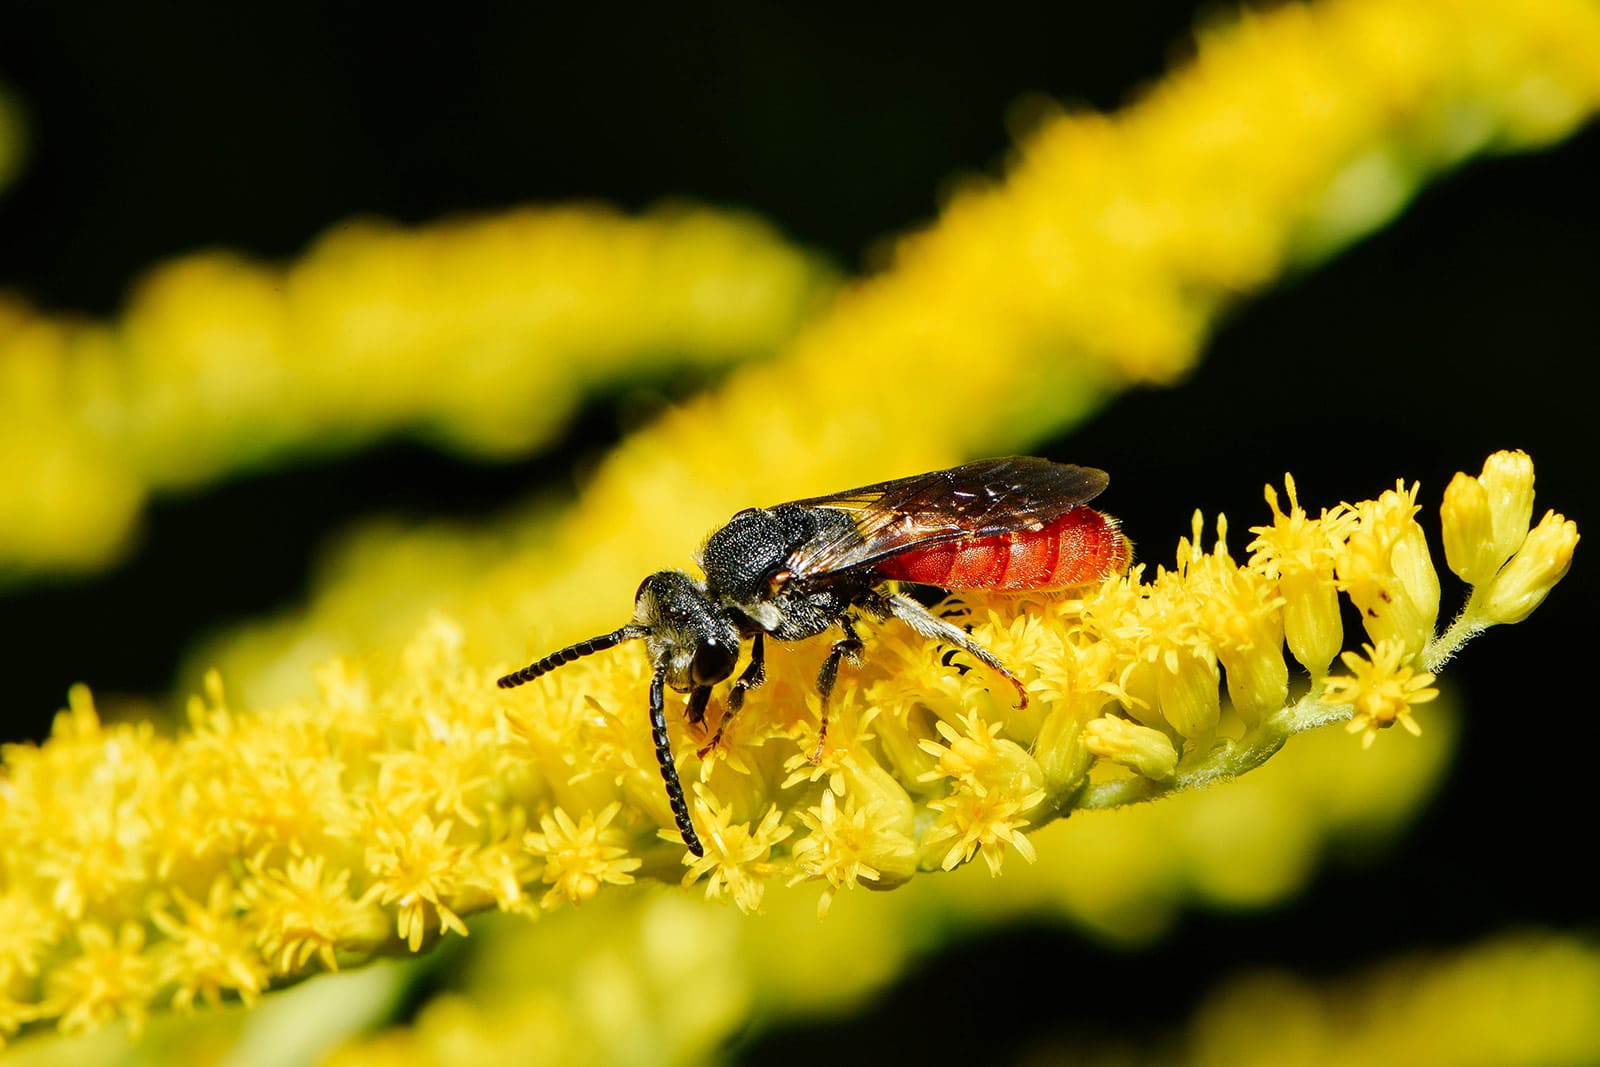 Box-headed Blood Bee (Sphecodes monilicornis)